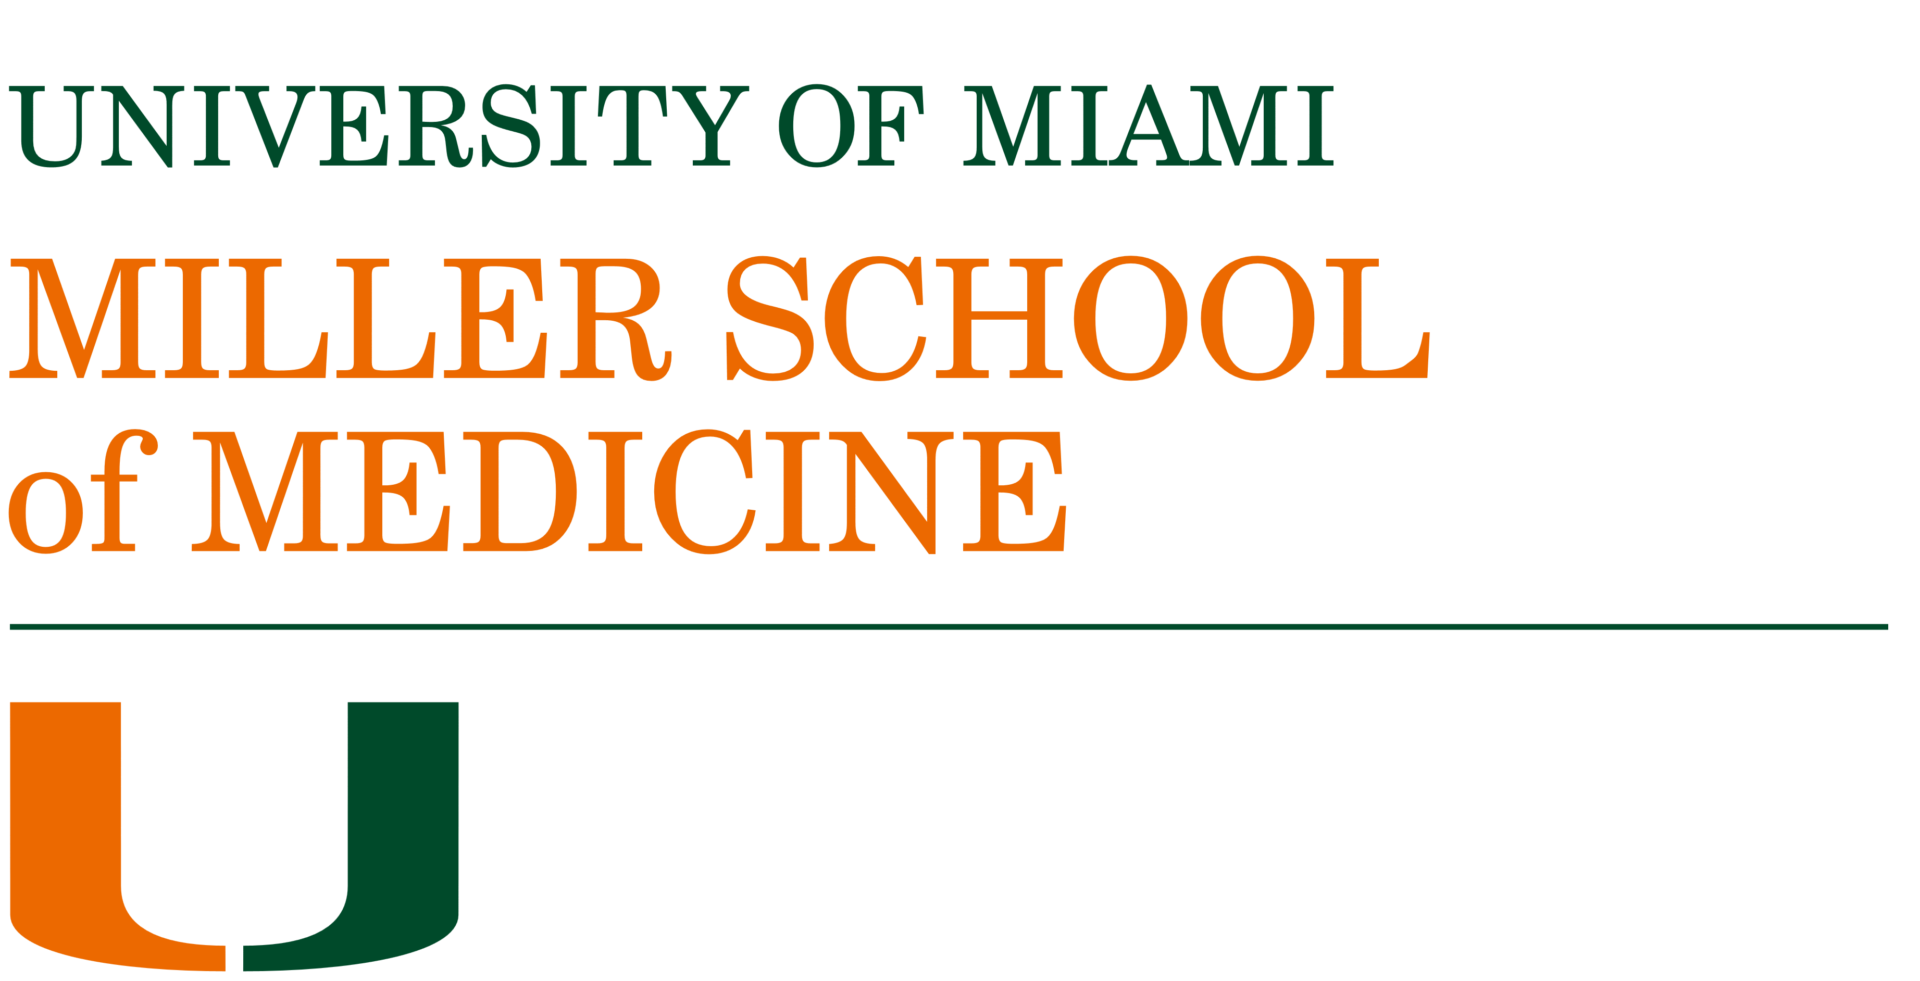 https://alainalevine.com/wp-content/uploads/2022/05/Miller_School_of_Medicine_logo_University_of_M.png